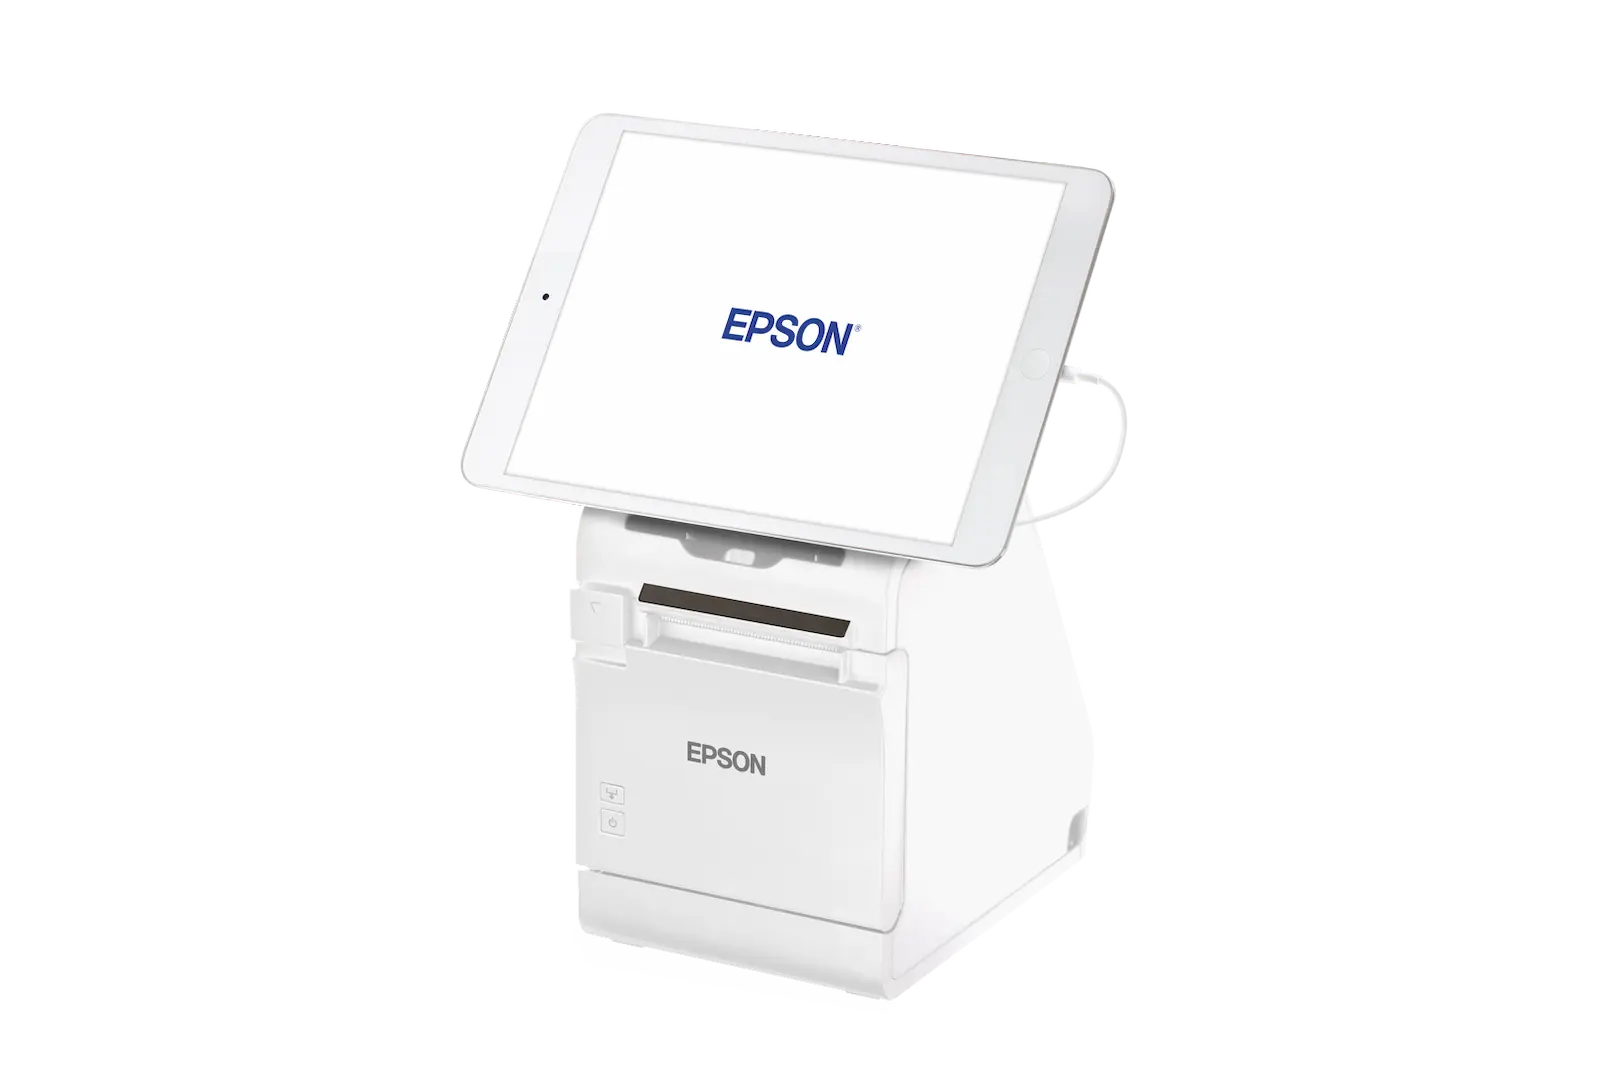 Epson Bondrucker TM-m30II in Weiß mit Bluetooth, Ethernet, USB, Tablethalterung von vorne links mit Tablet